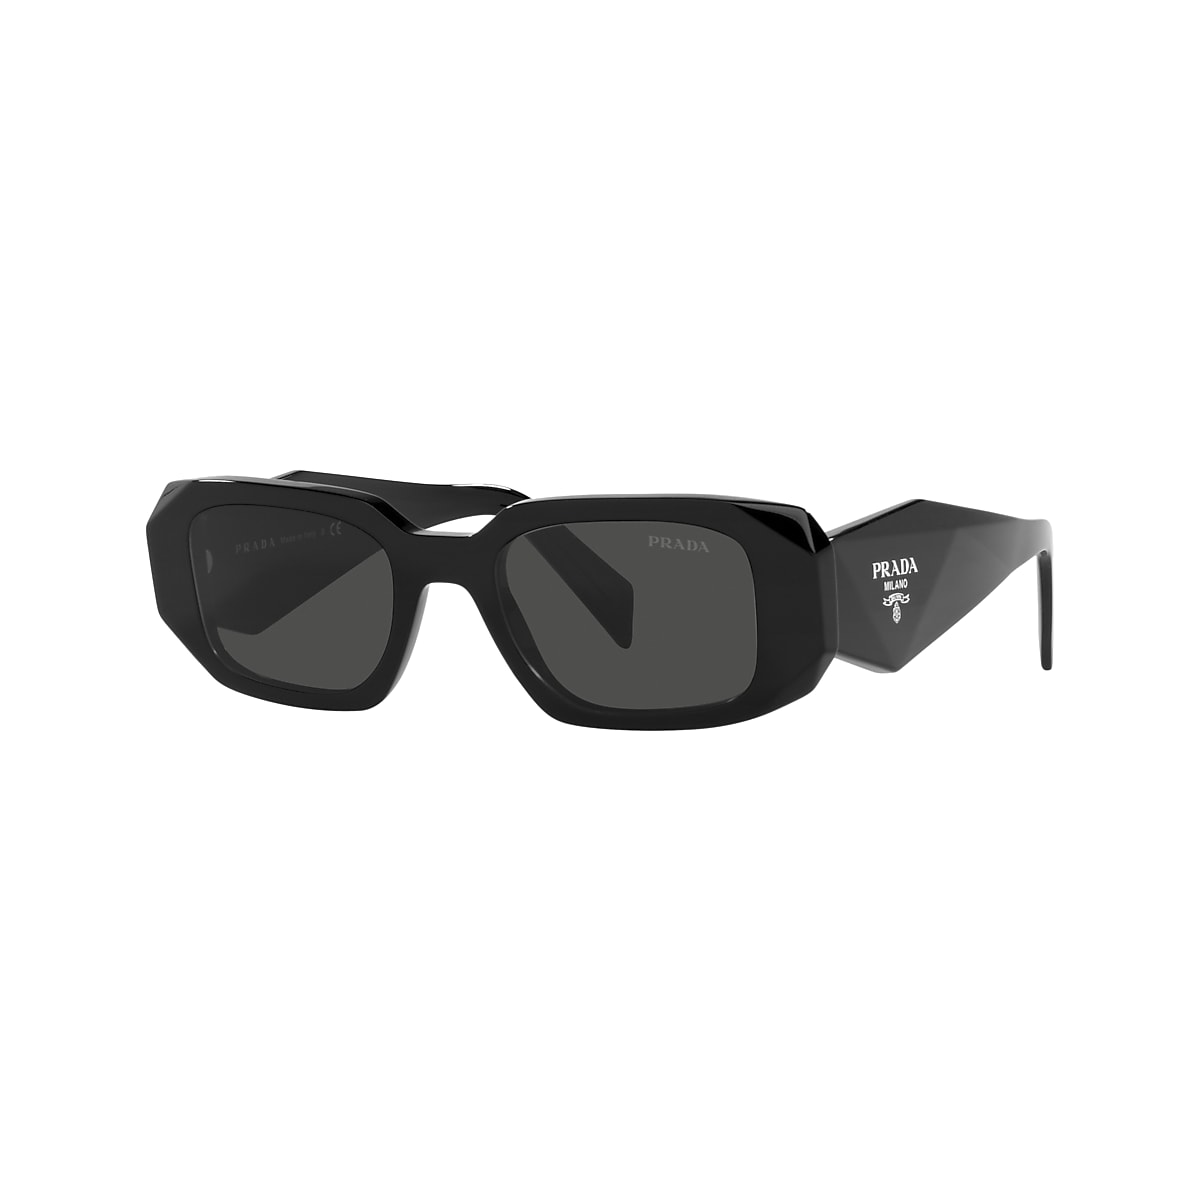 Prada PR 17WS 49 Dark Grey & Black Sunglasses | Sunglass Hut Australia